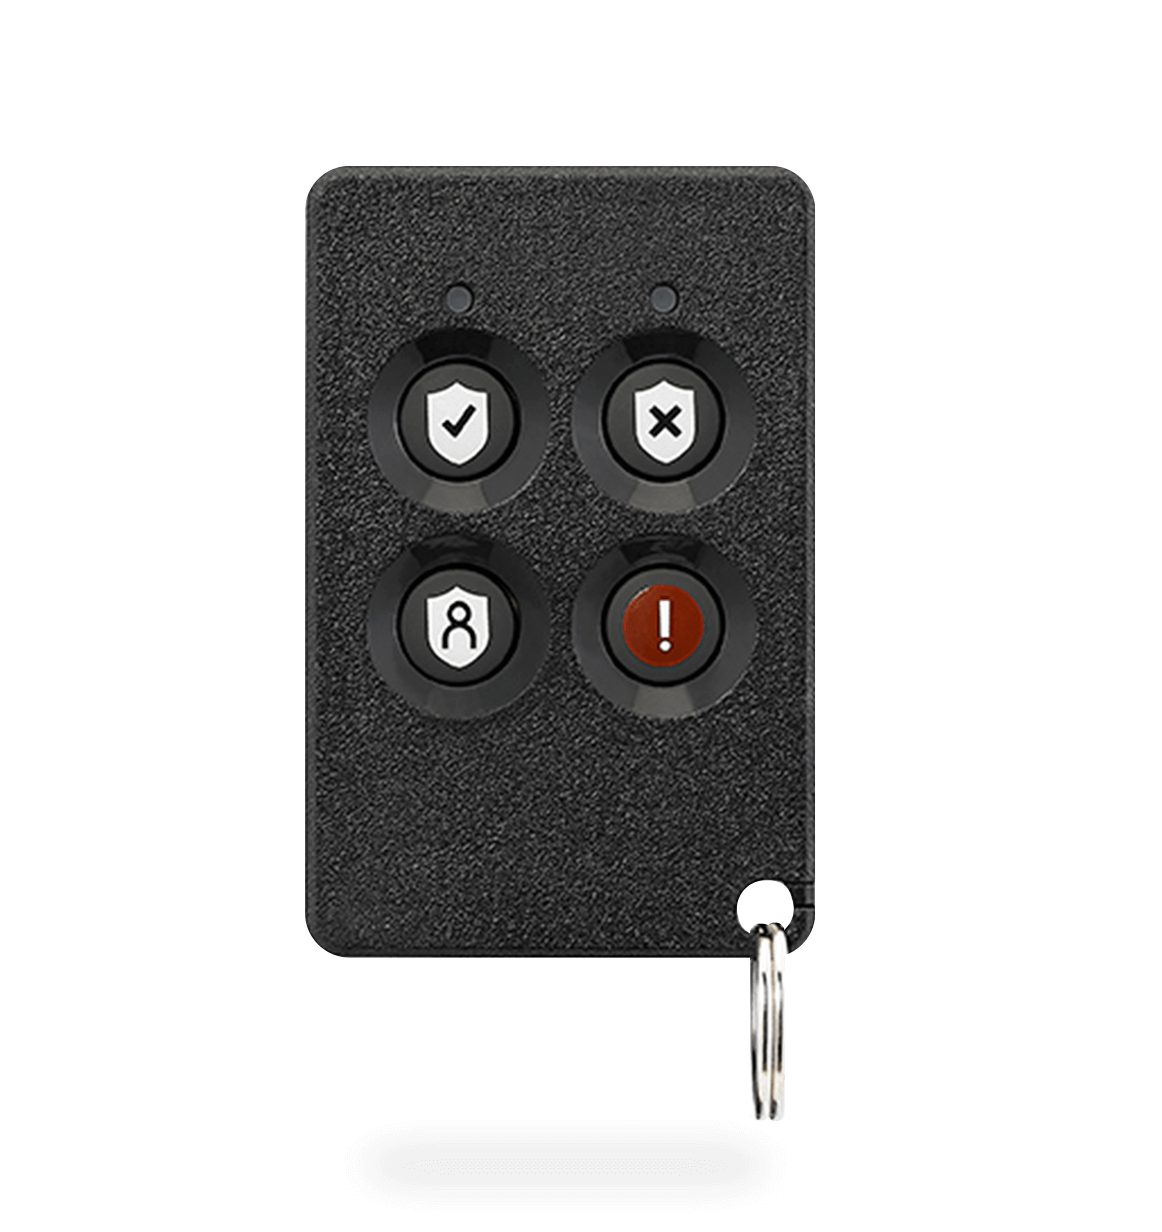 Hvordan bruker jeg ADT Keychain Remote?